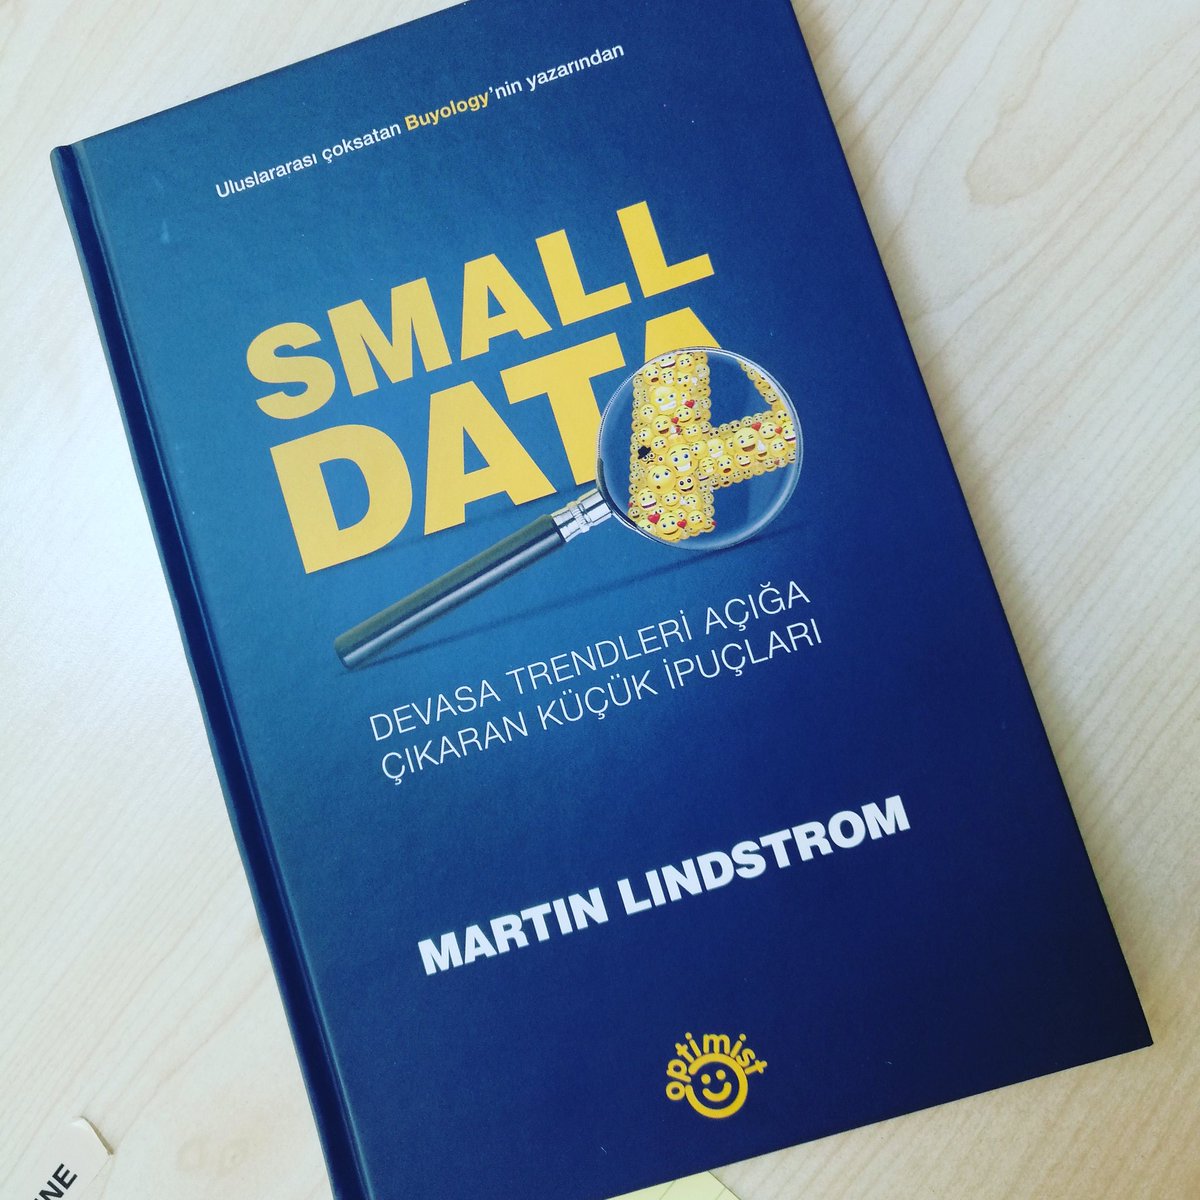 @MartinLindstrom'un yeni kitabi raflarda #smalldata #iskitaplari @Optimistkitap #encokokunankitap